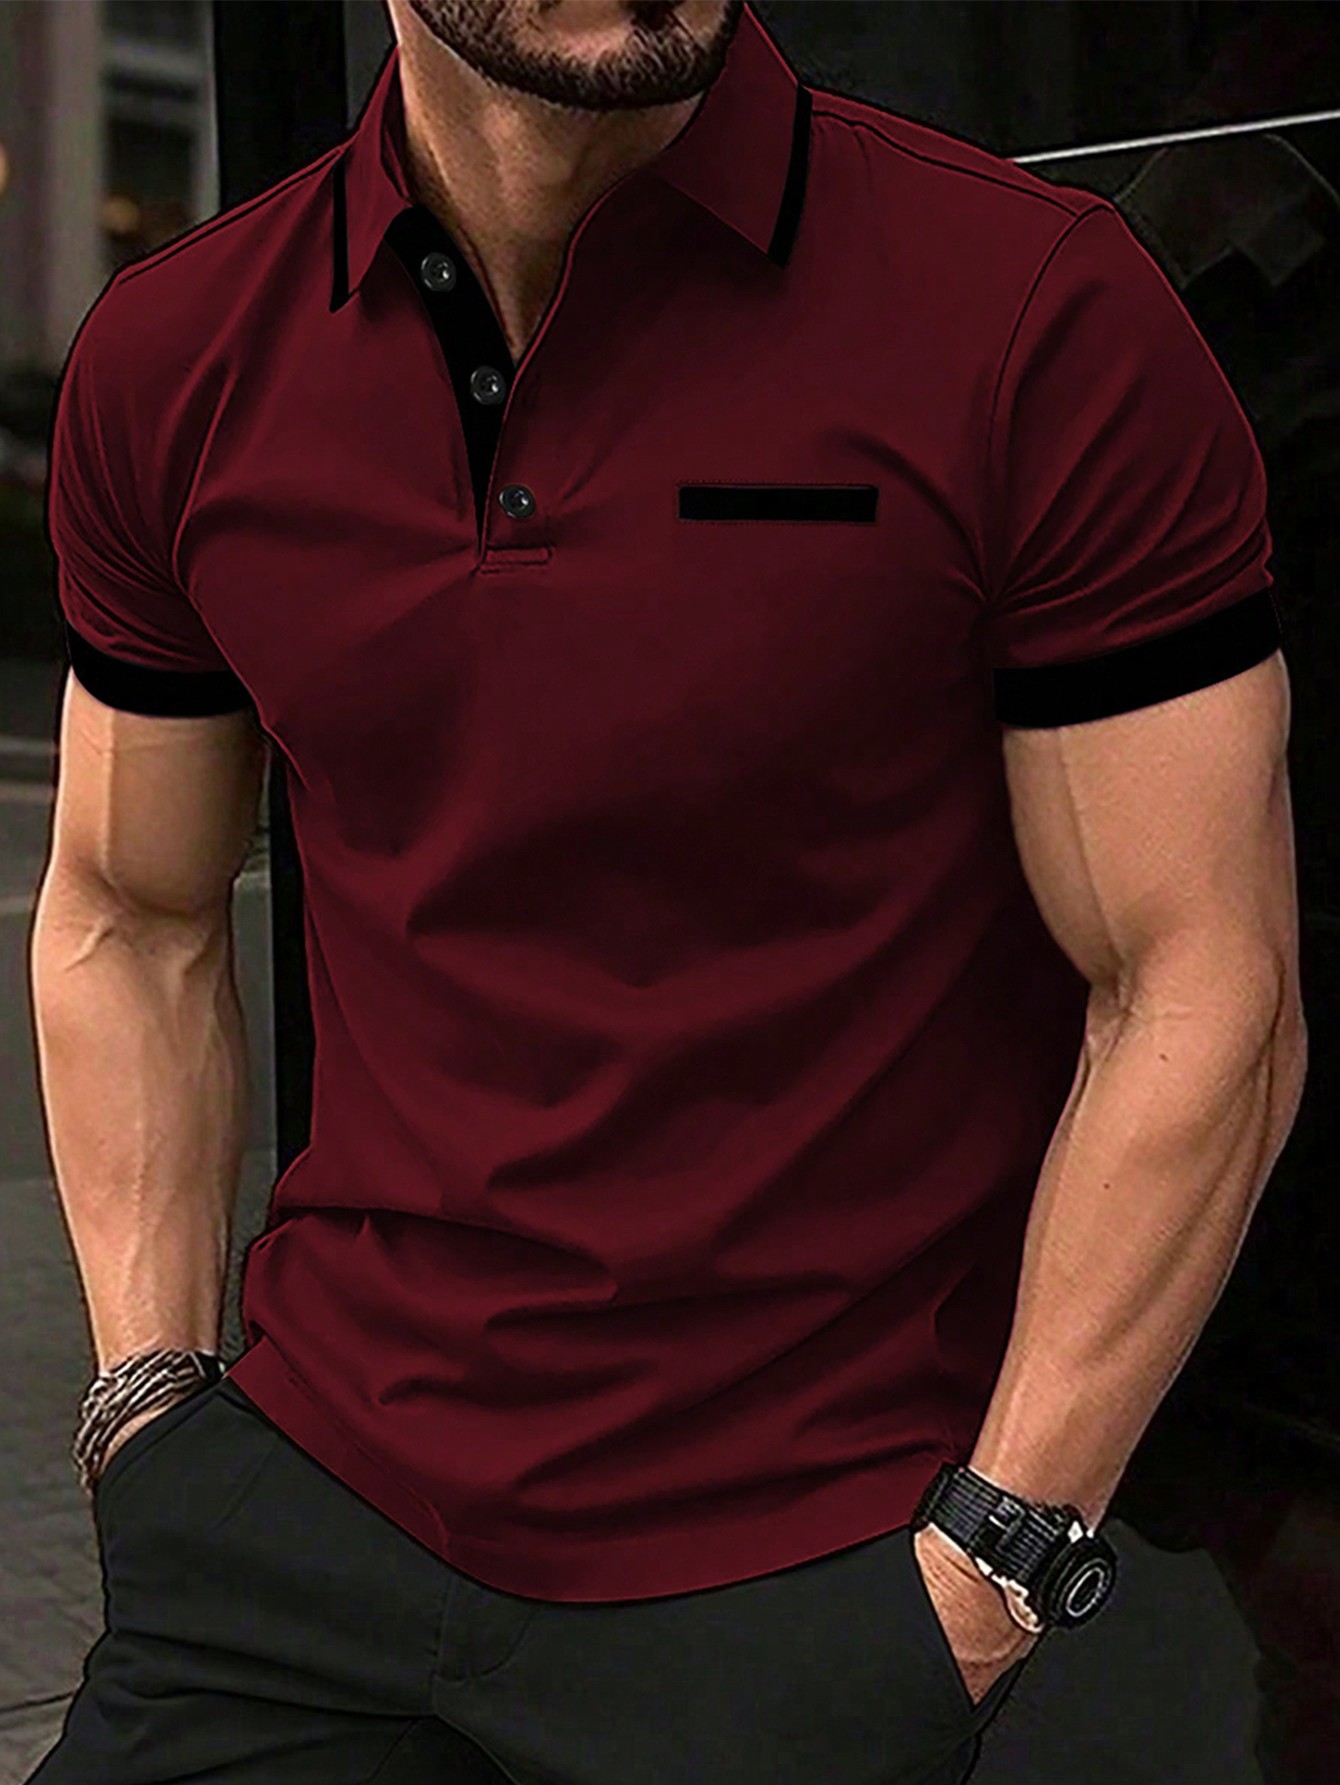 Мужская рубашка-поло контрастного цвета Manfinity Homme, бургундия мужская рубашка поло контрастного цвета manfinity homme черный